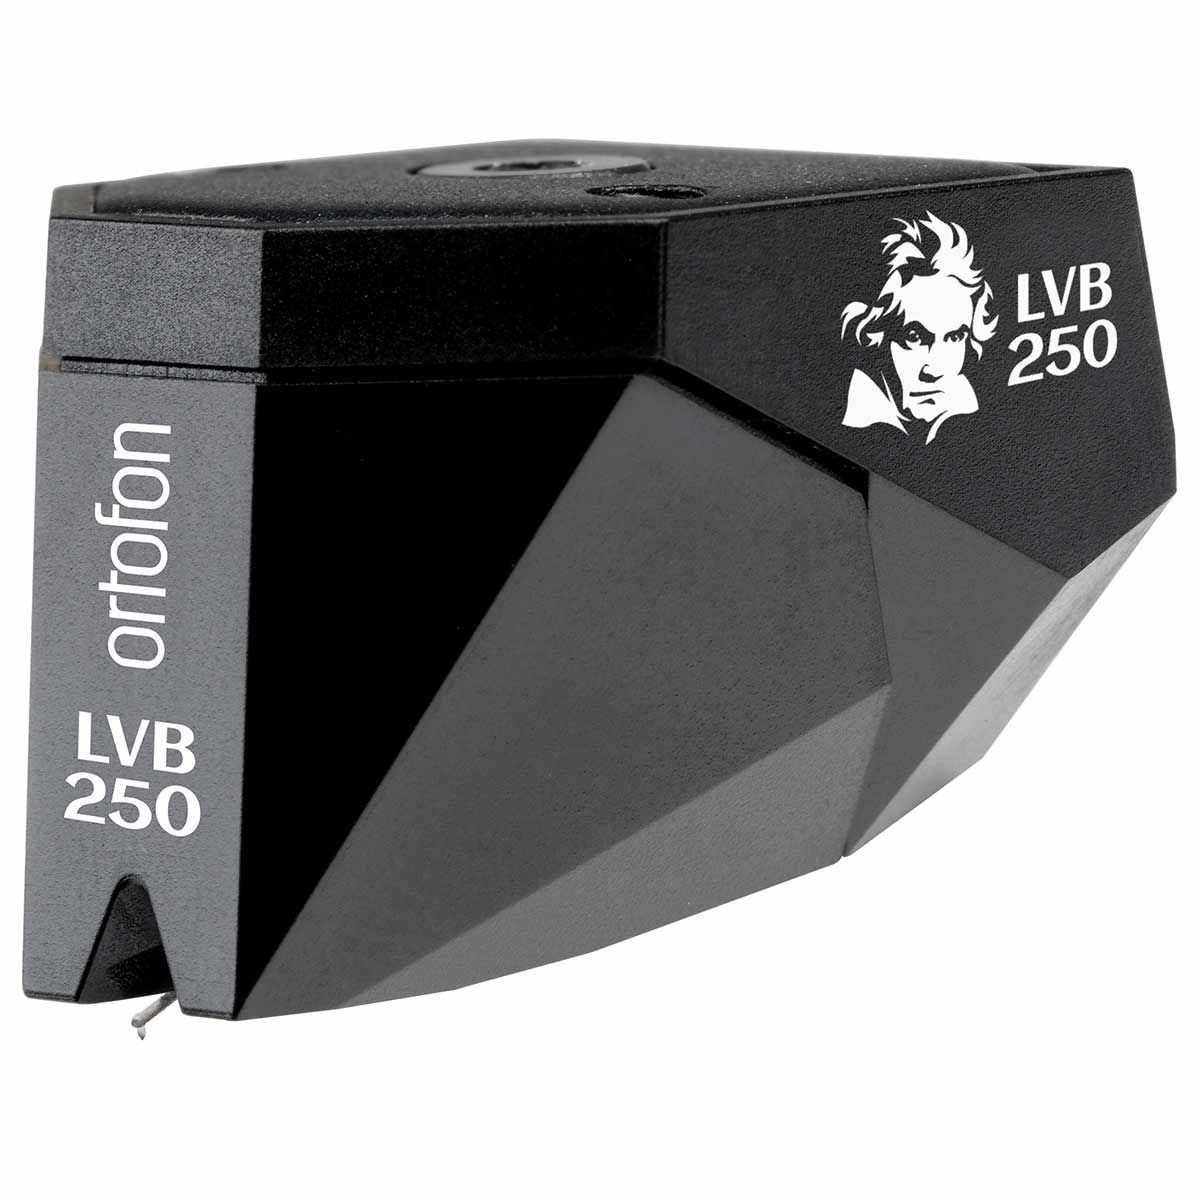 Ortofon 2M Black LVB 250 Moving Magnet Phono Cartridge, front angle